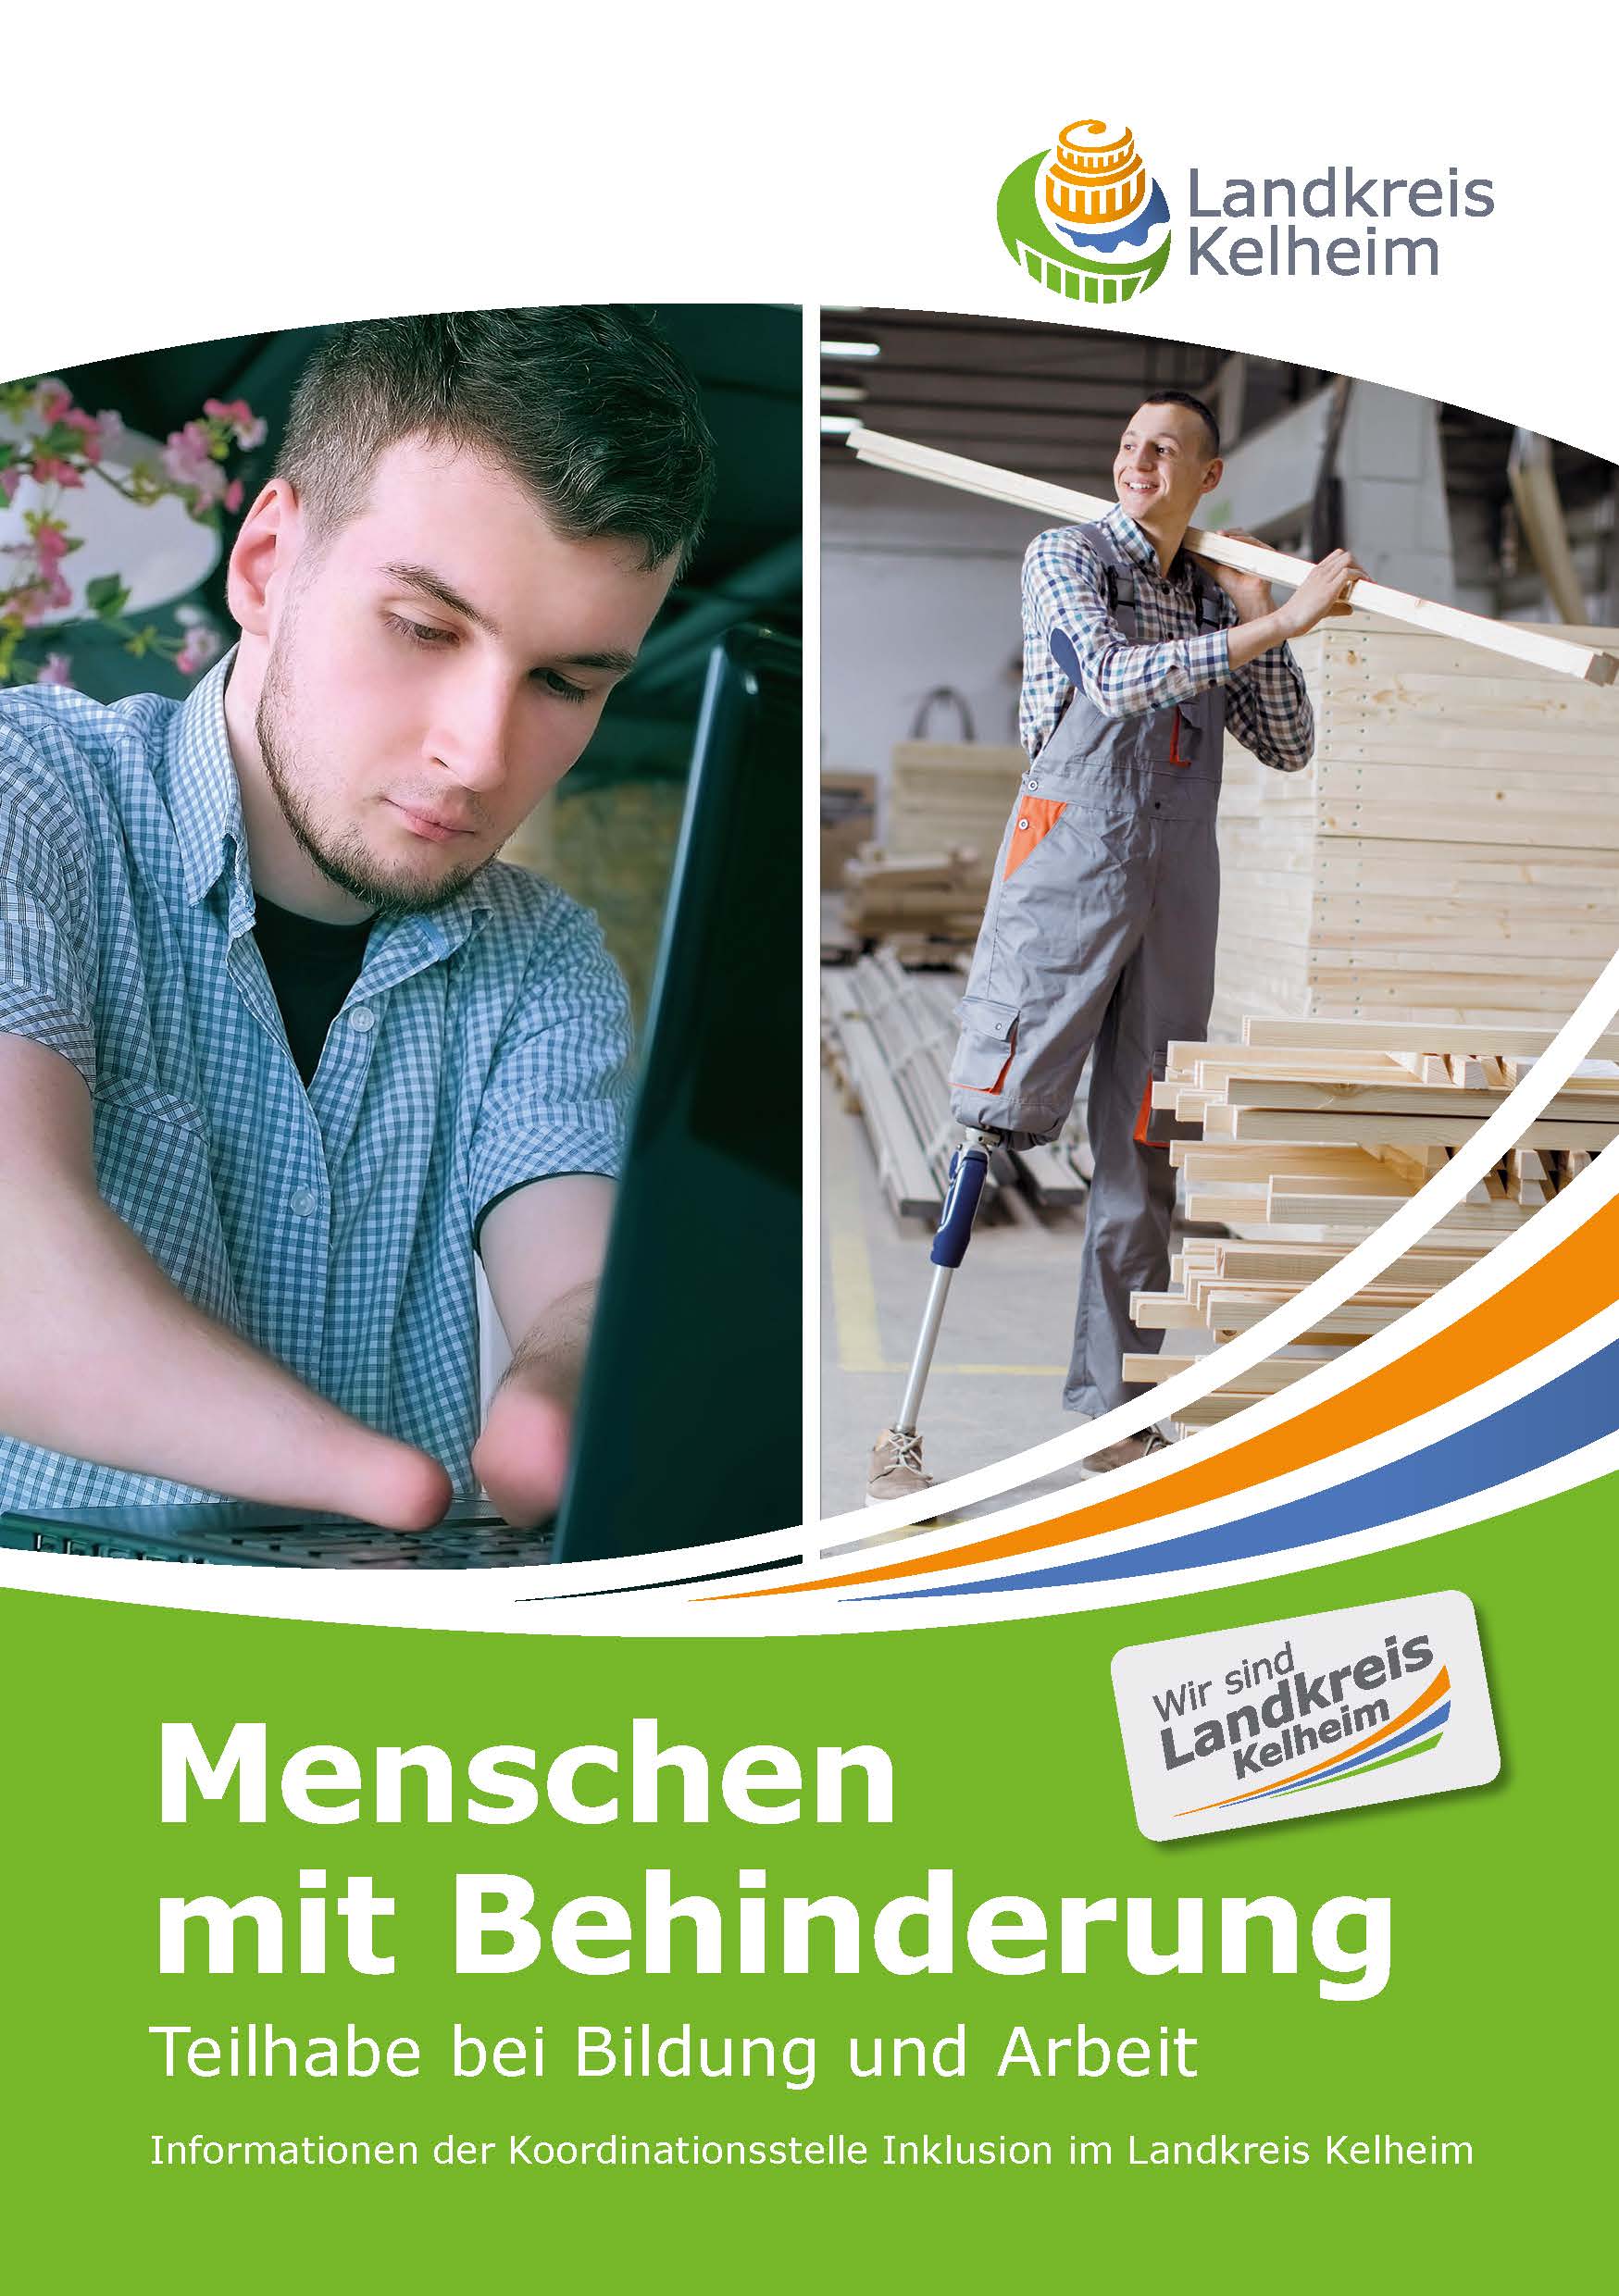 Teilhabe bei Bildung und Arbeit für Menschen mit Behinderung – neuer Ratgeber des Landkreises Kelheim